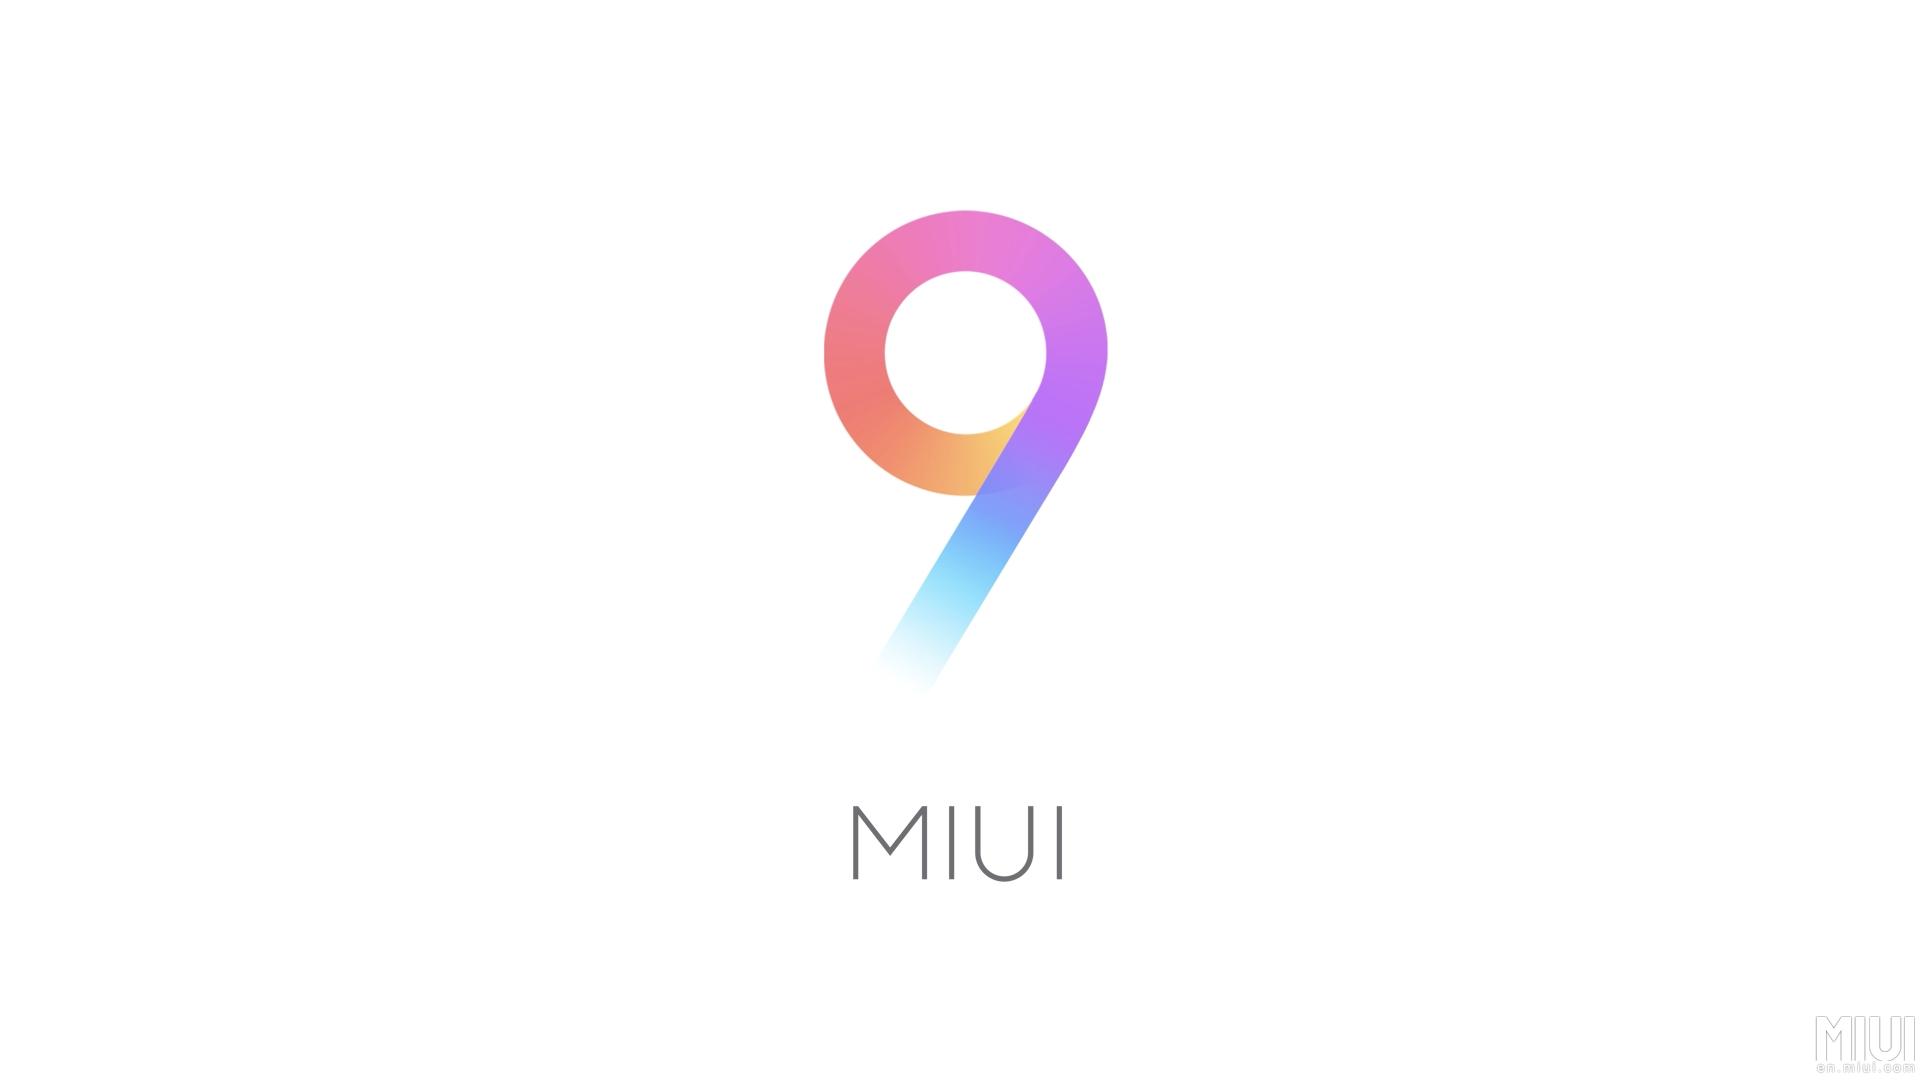 Ссылки на загрузку MIUI 9 для различных устройств Xiaomi